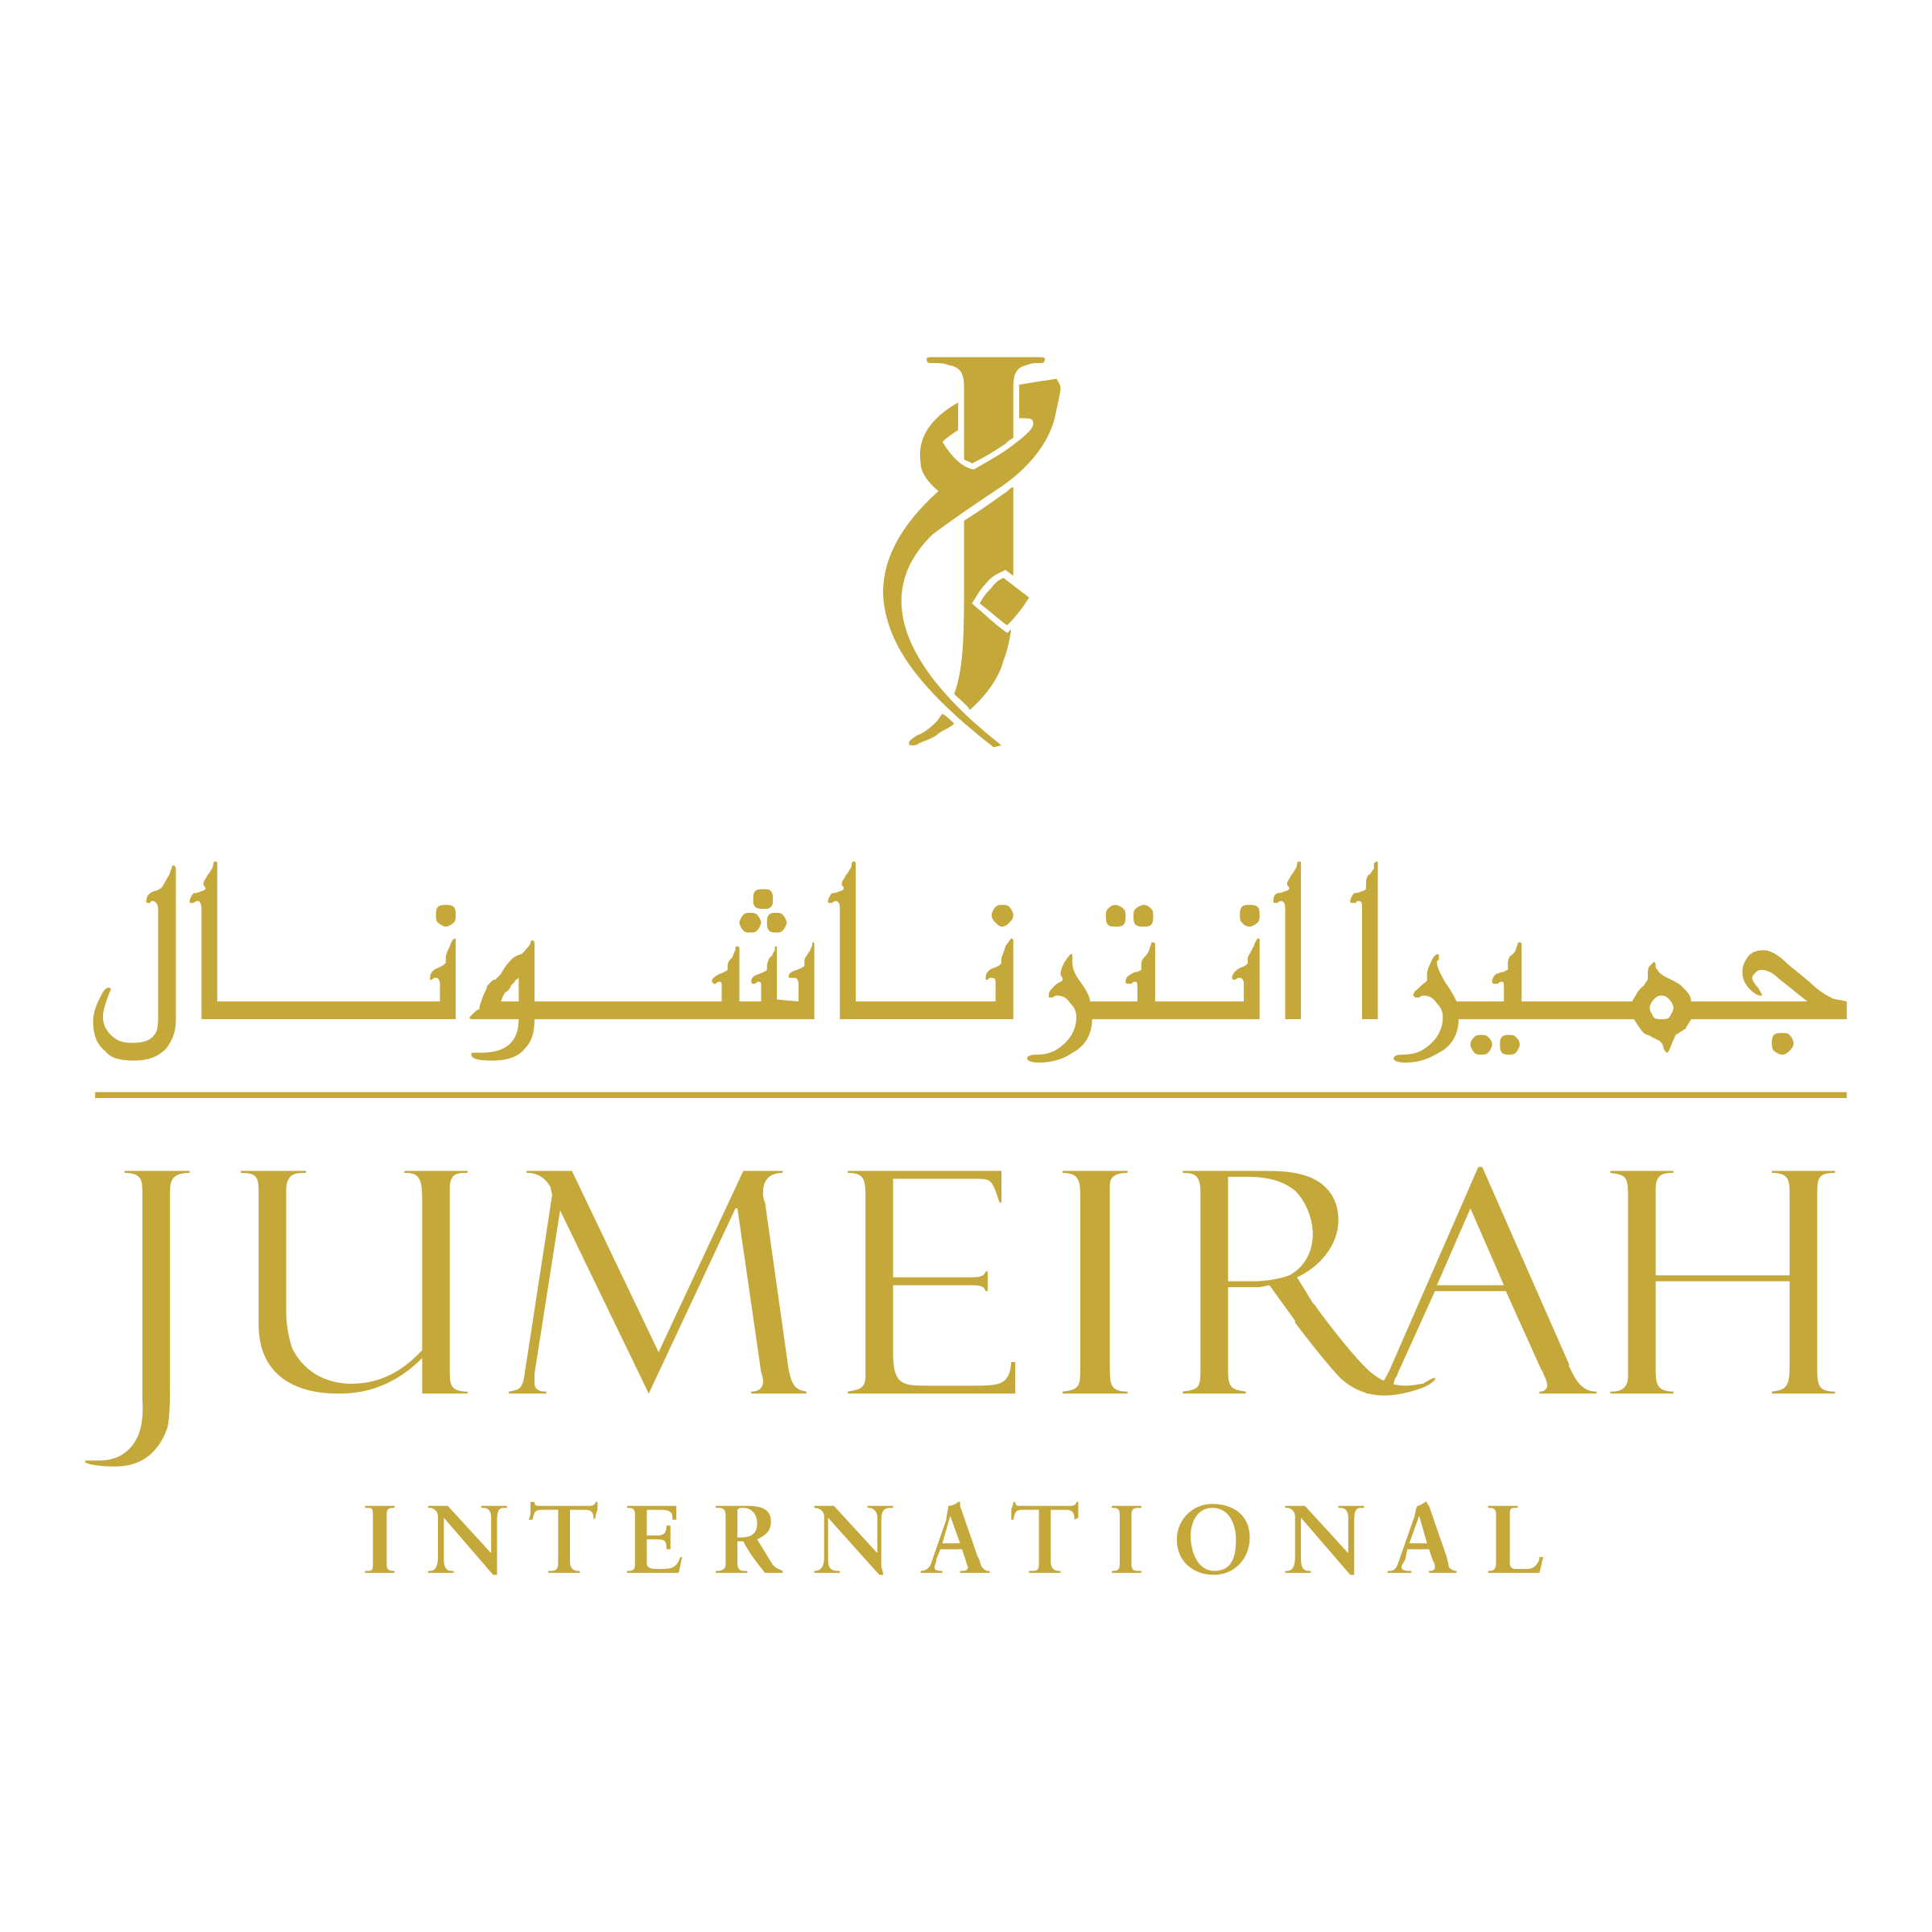 Jumeirah Logo - Jumeirah International Logo PNG Transparent & SVG Vector - Freebie ...